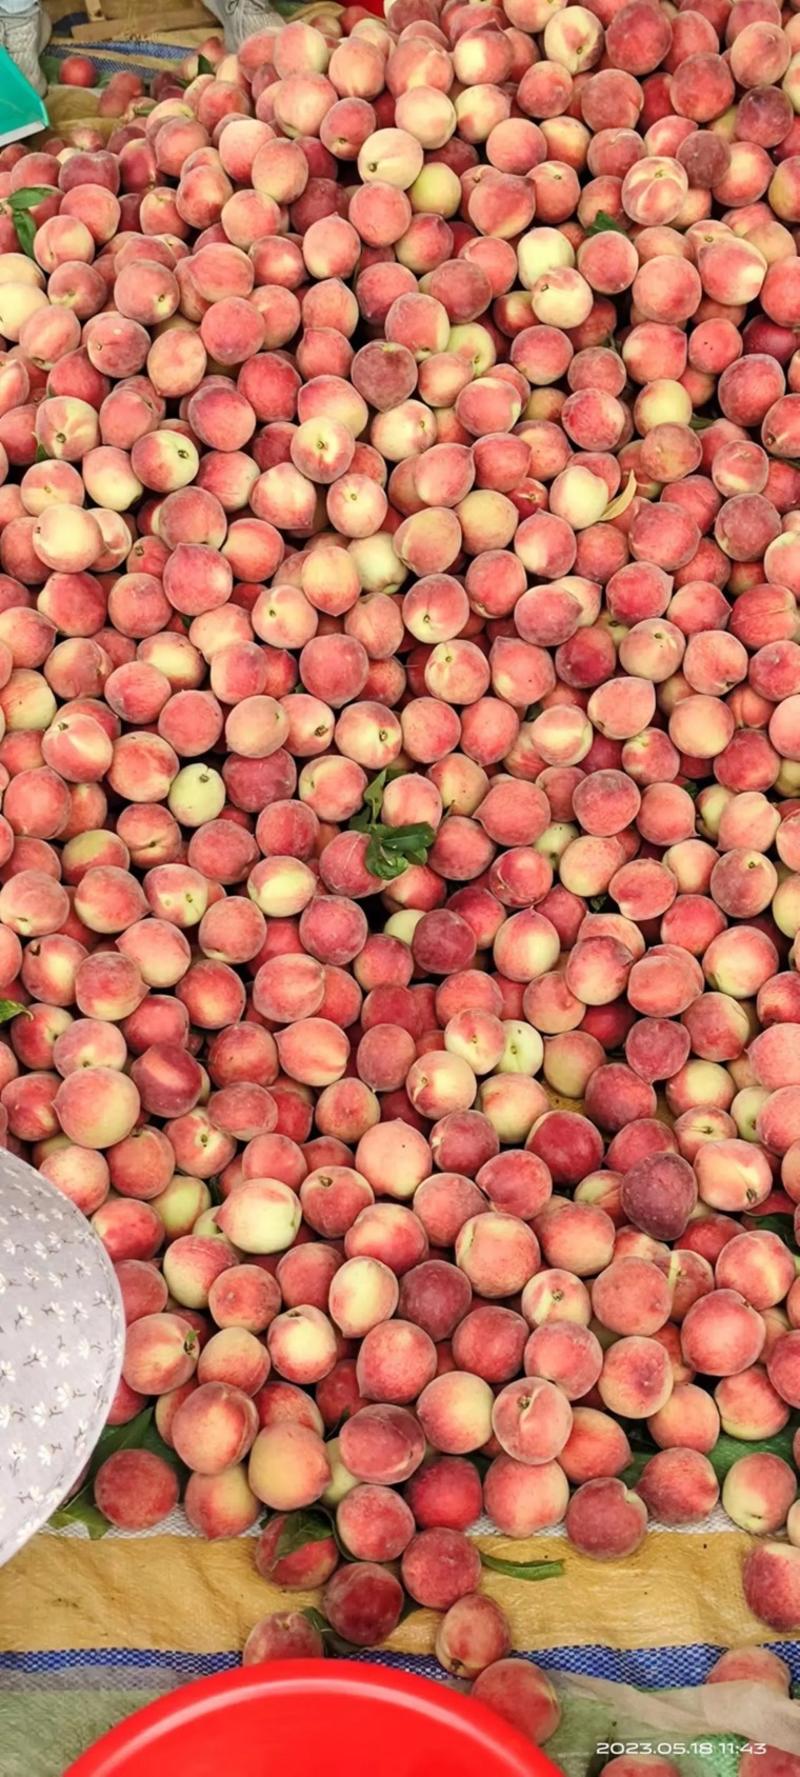 【毛桃】湖北红不软血桃品种齐全量大从优全国发货